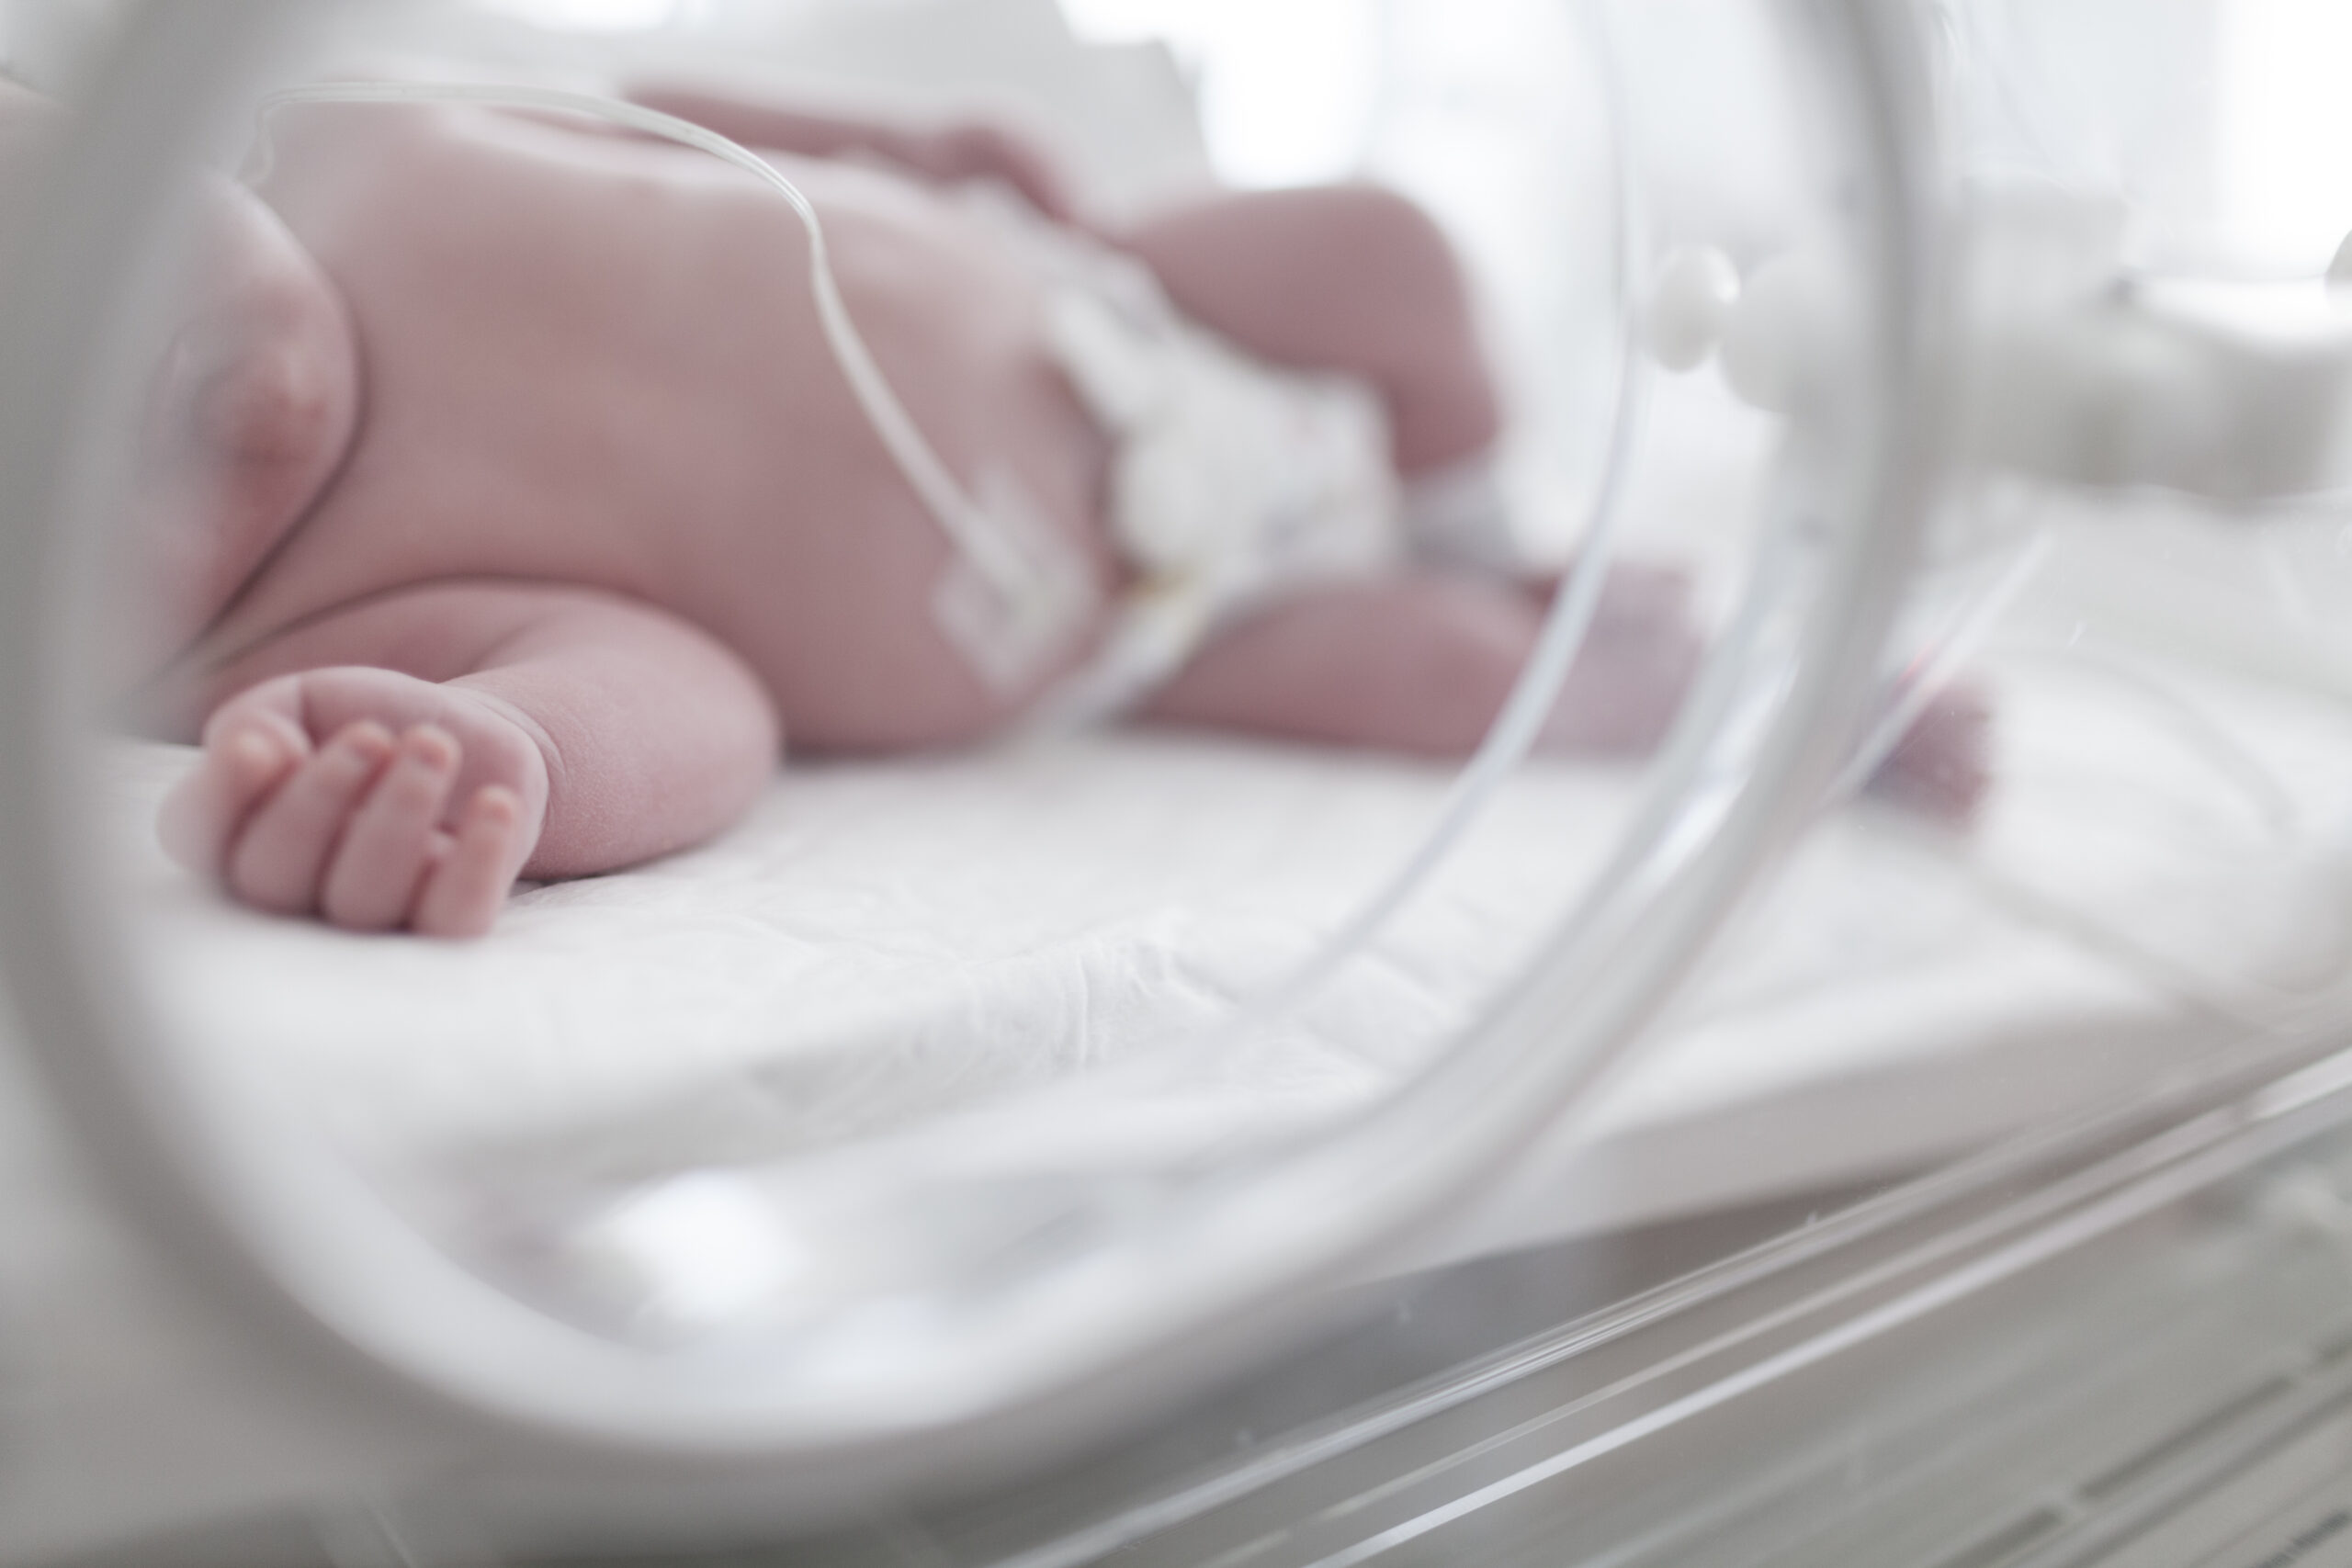 El Hospital Vithas Medimar ofrece un nuevo servicio para inscribir el nacimiento del bebé en el Registro Civil desde el propio centro